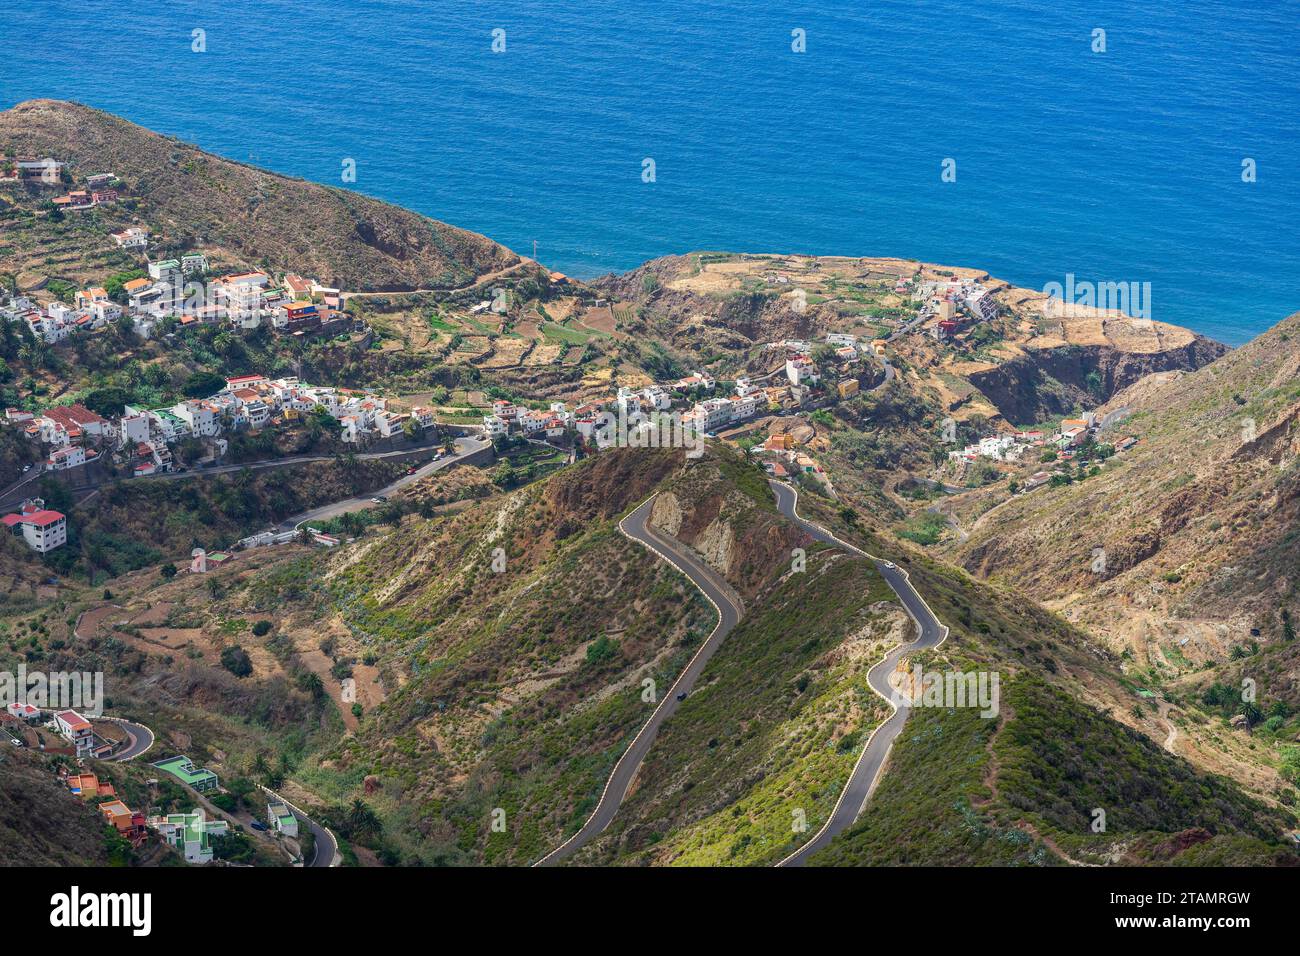 Das Anaga-Massiv (Macizo de Anaga). Natürliche Landschaft im Norden Teneriffas und der kleinen Stadt Taganana. Kanarische Inseln. Spanien. Stockfoto